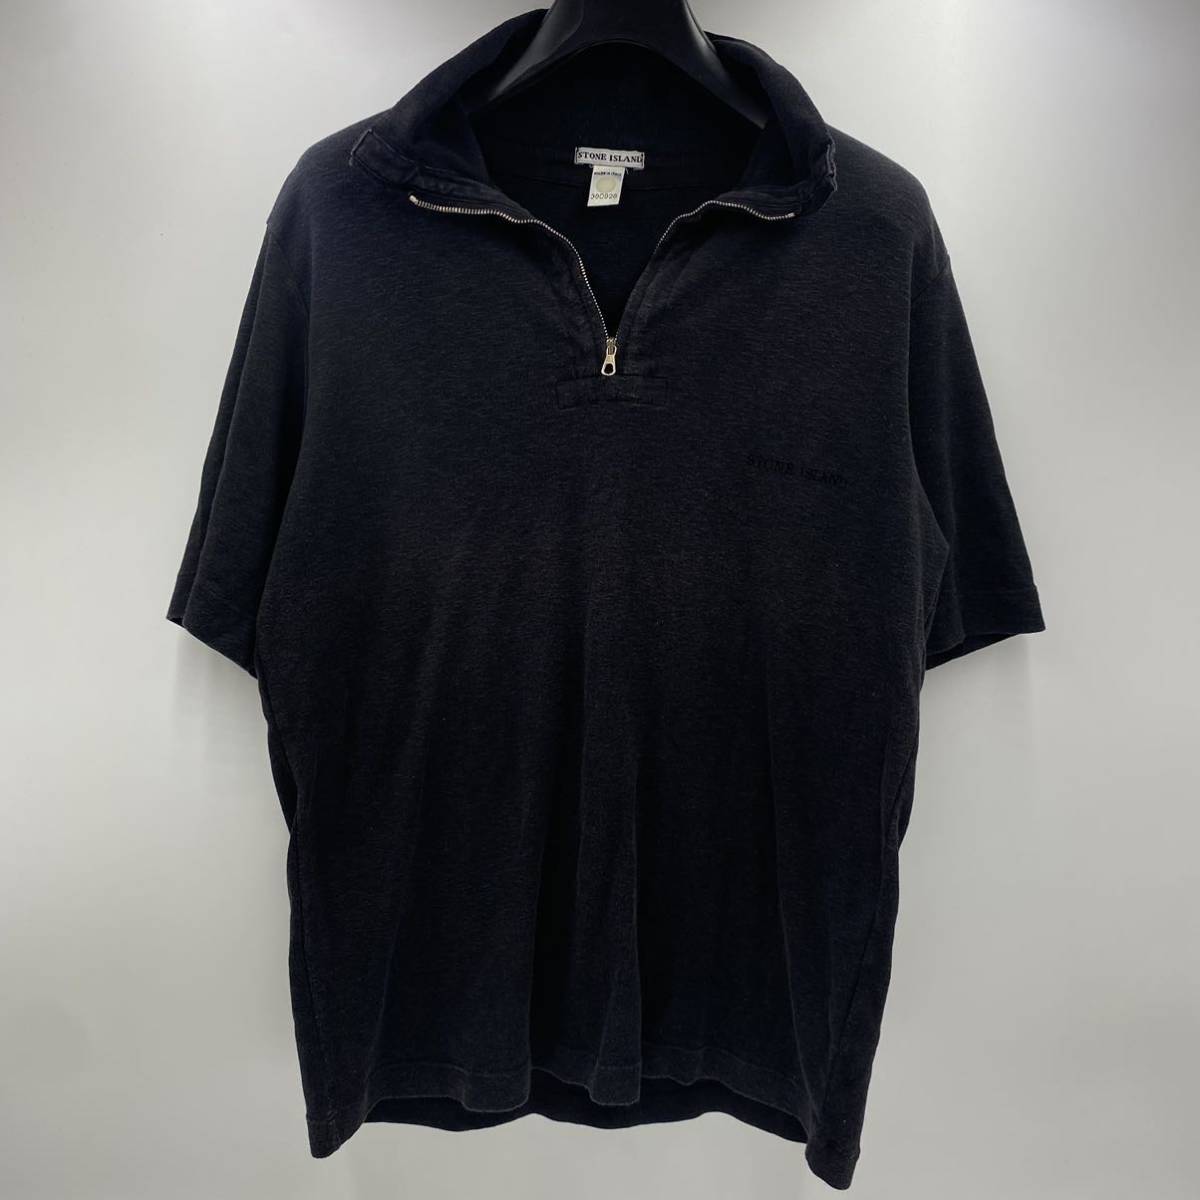 激レア イタリア製ストーンアイランド STONE ISLAND コットン ハーフジップ 半袖カットソー ポロシャツ Tシャツ M 黒 ブラック ロゴ b484